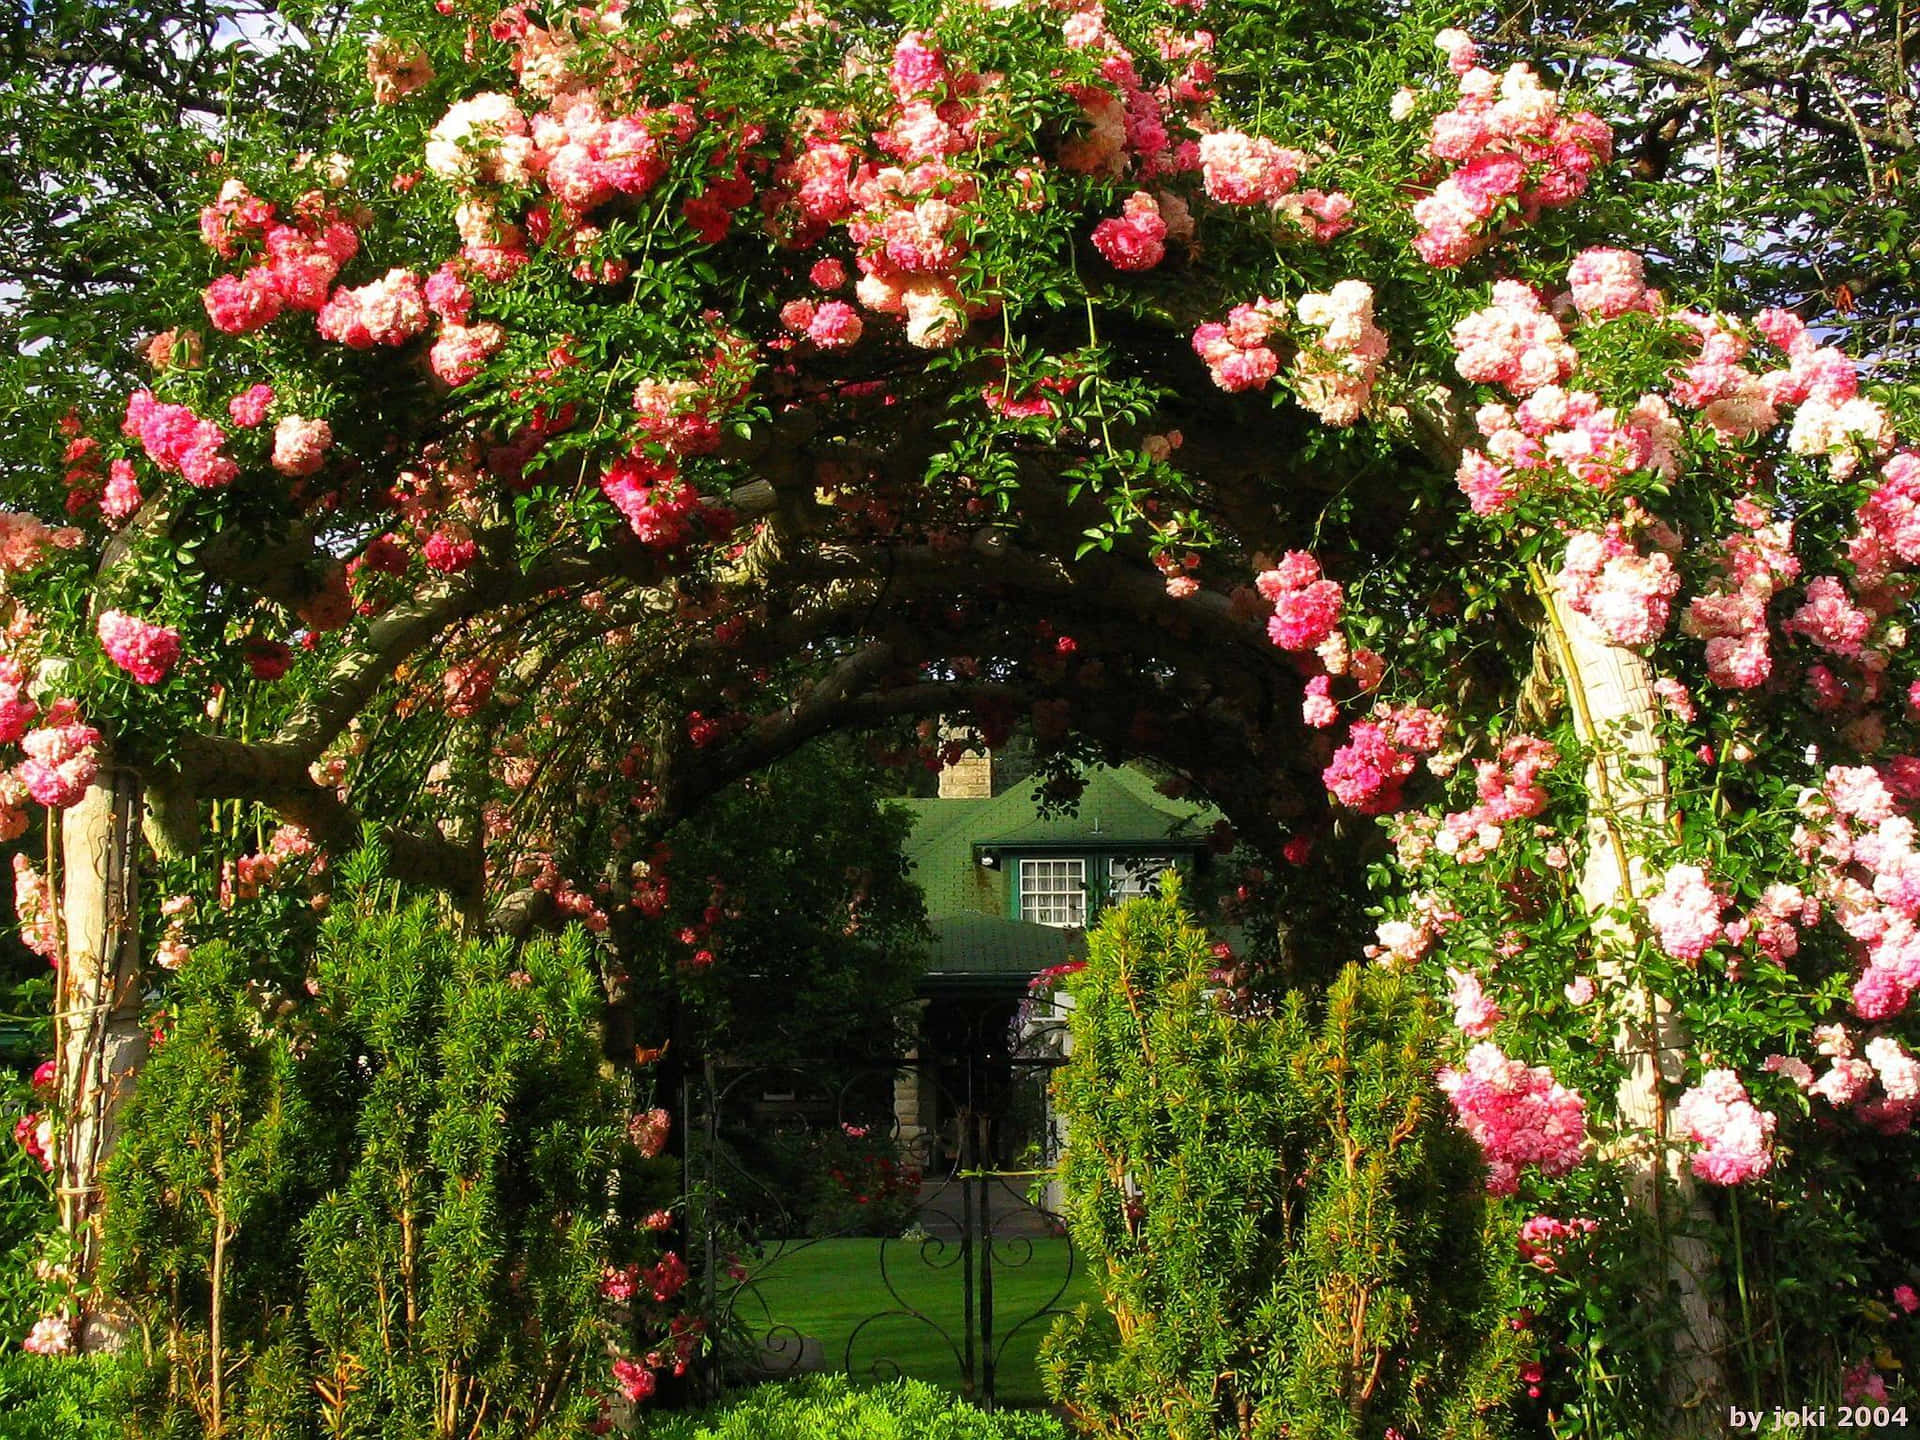 Rosasdo Jardim Em Um Arco Verde De Jardim.